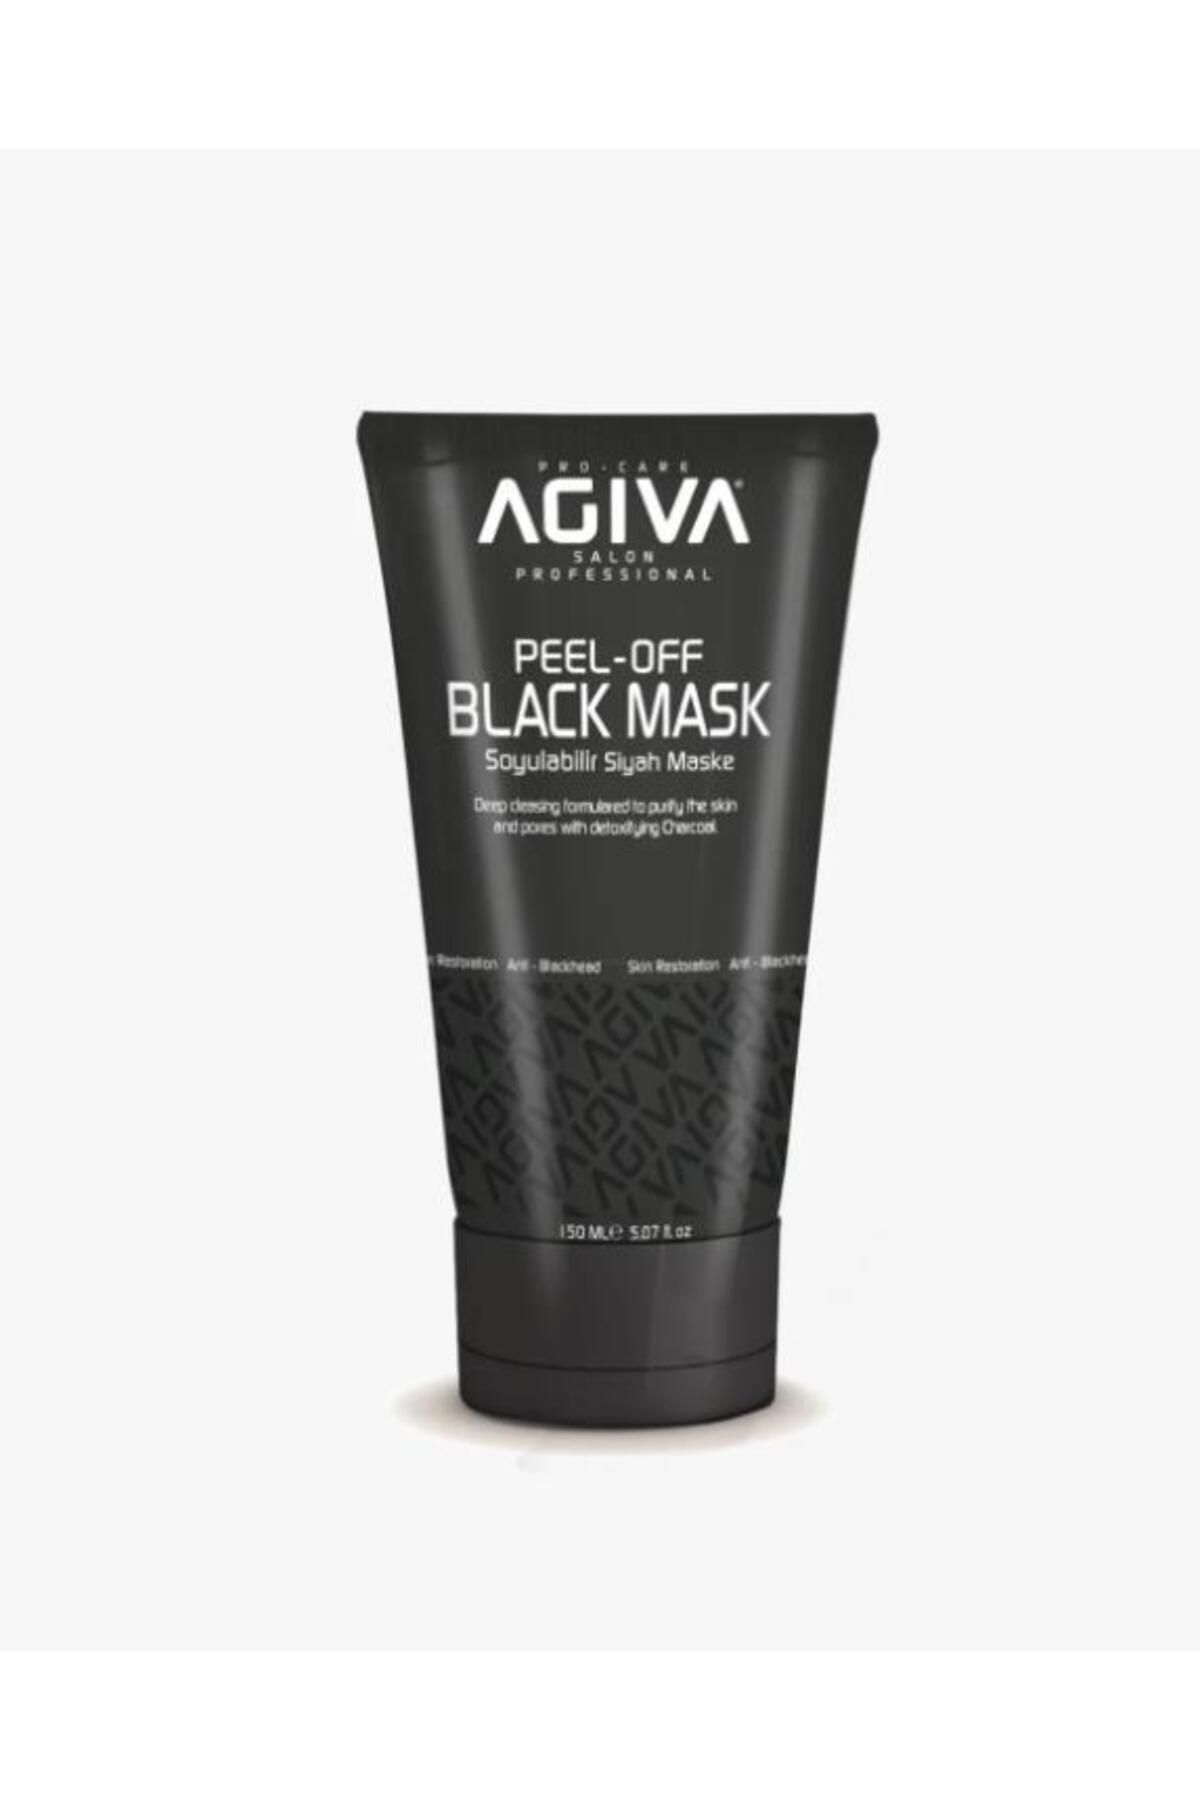 Agiva Soyulabilir Siyah Maske 150 ml